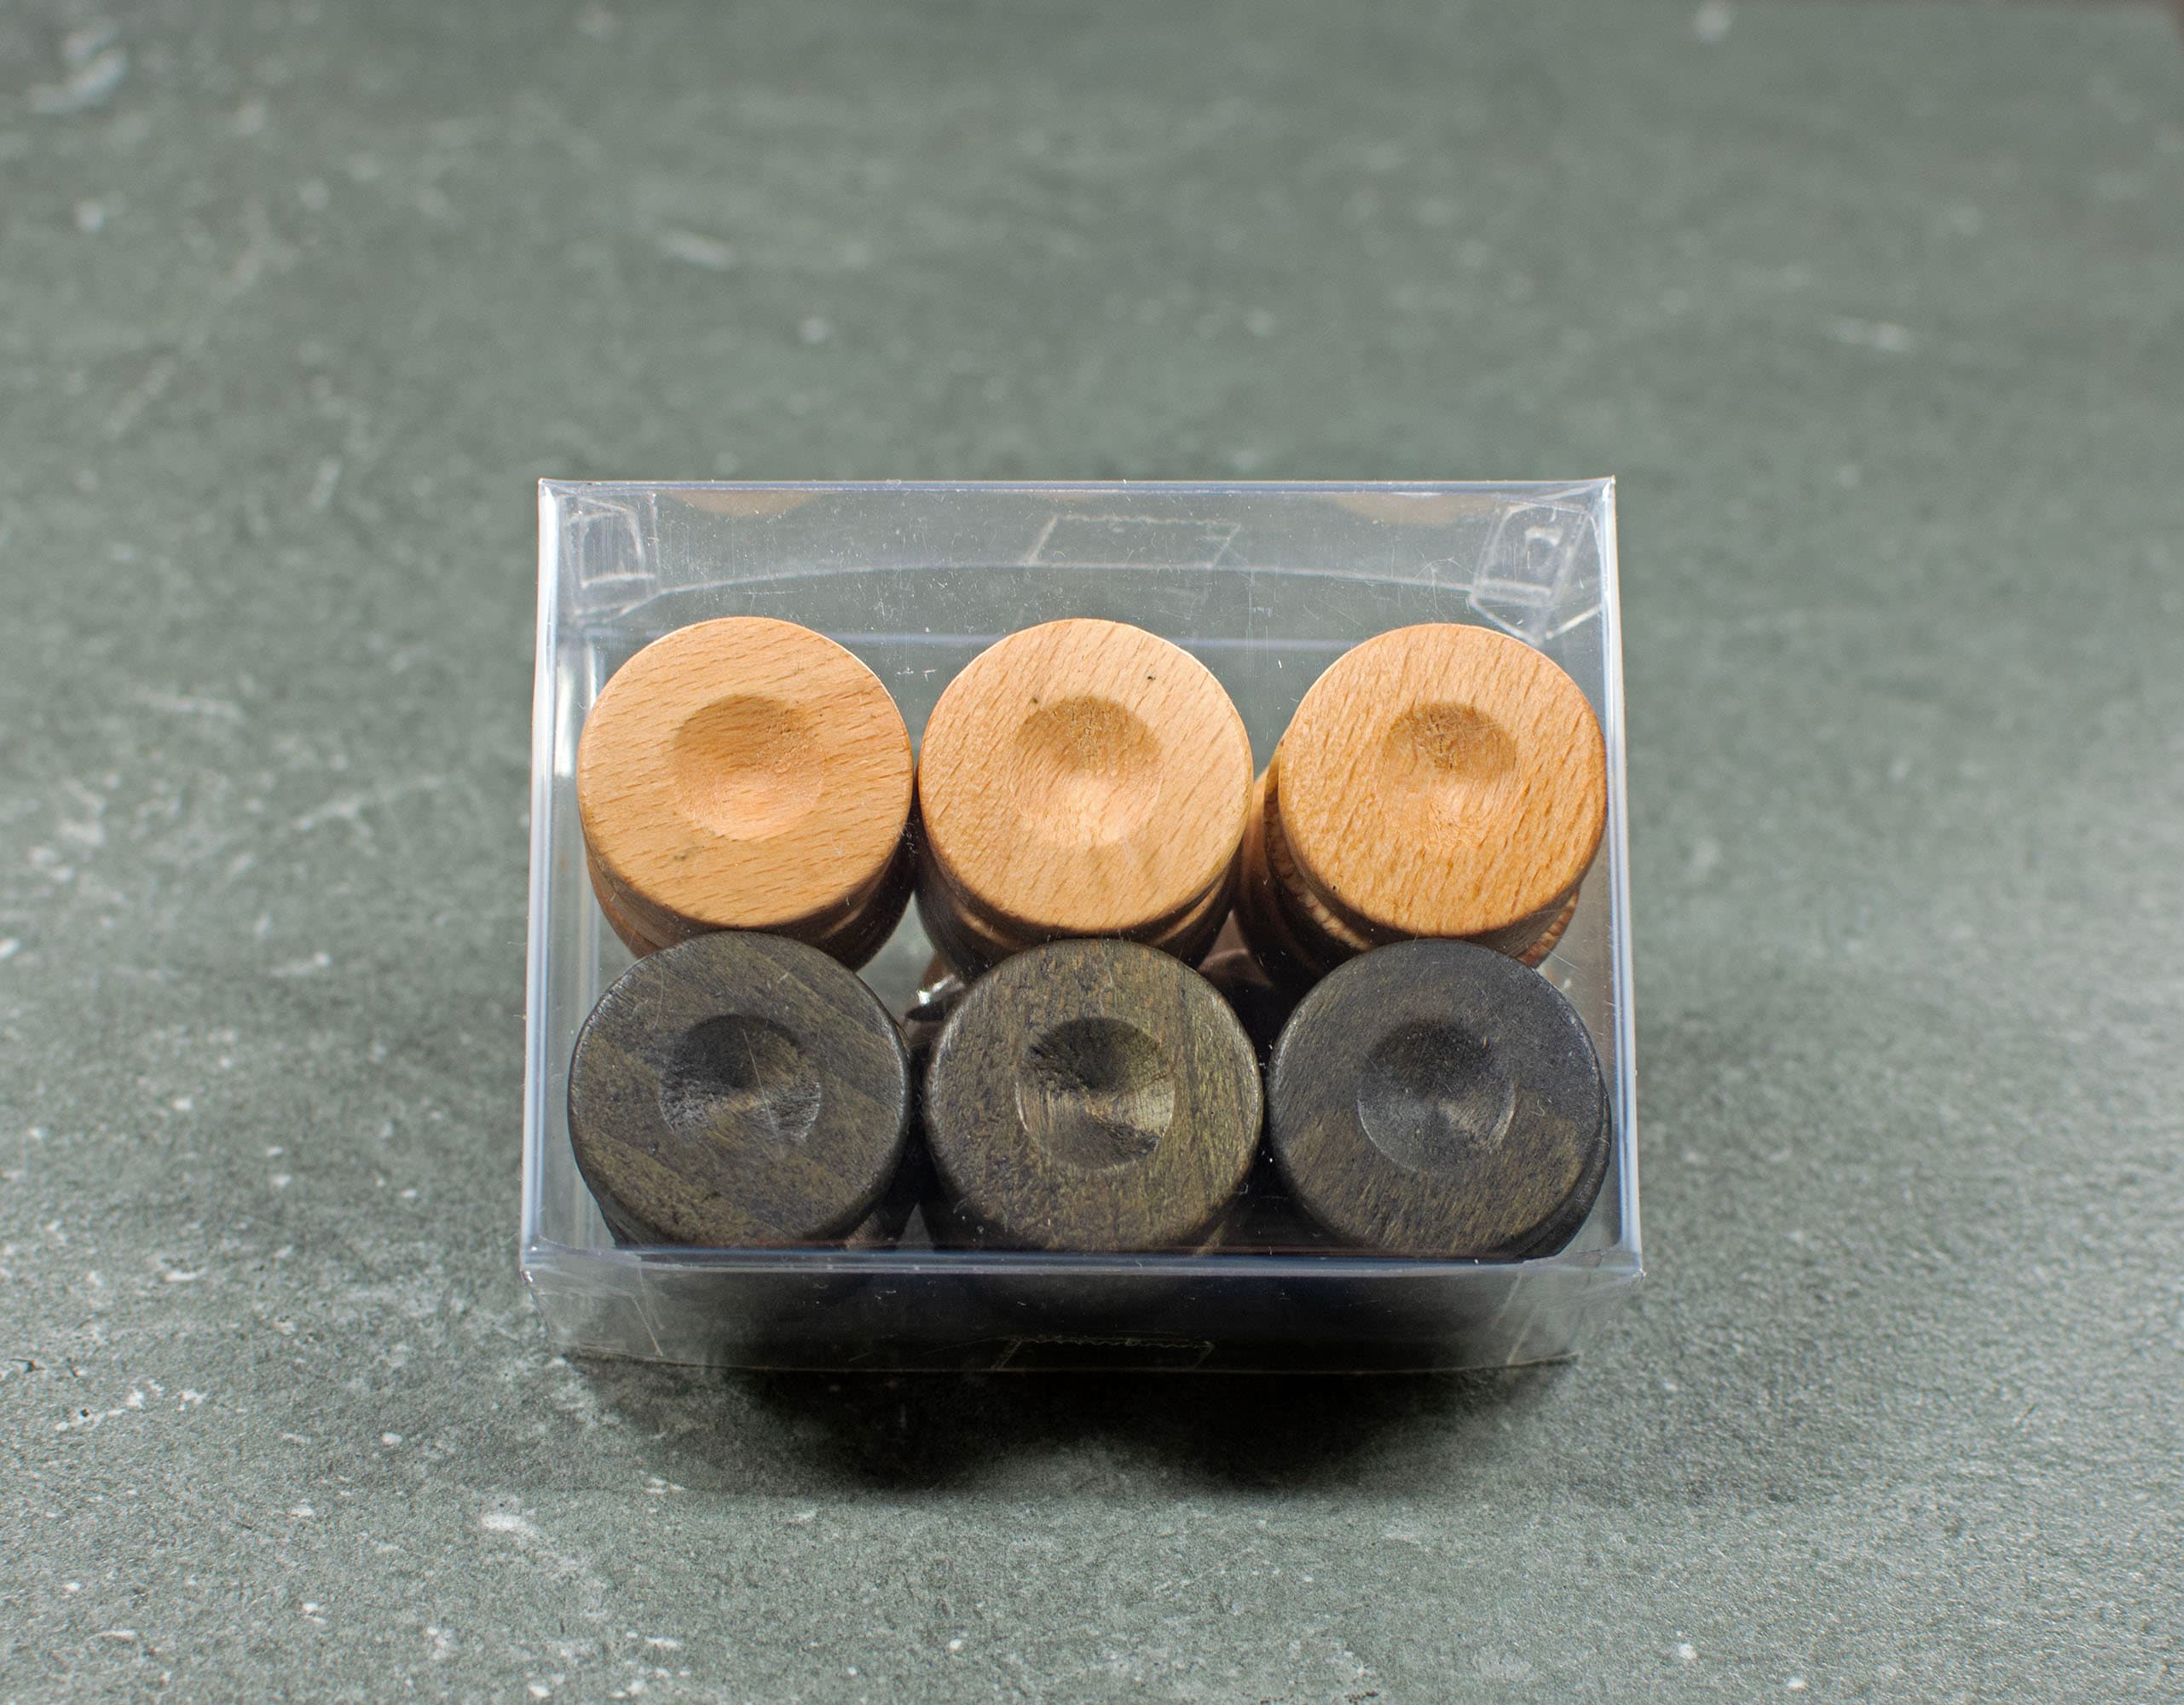 30 Βeech Wood Backgammon Checkers Chips 26mm 1.0 Inches High